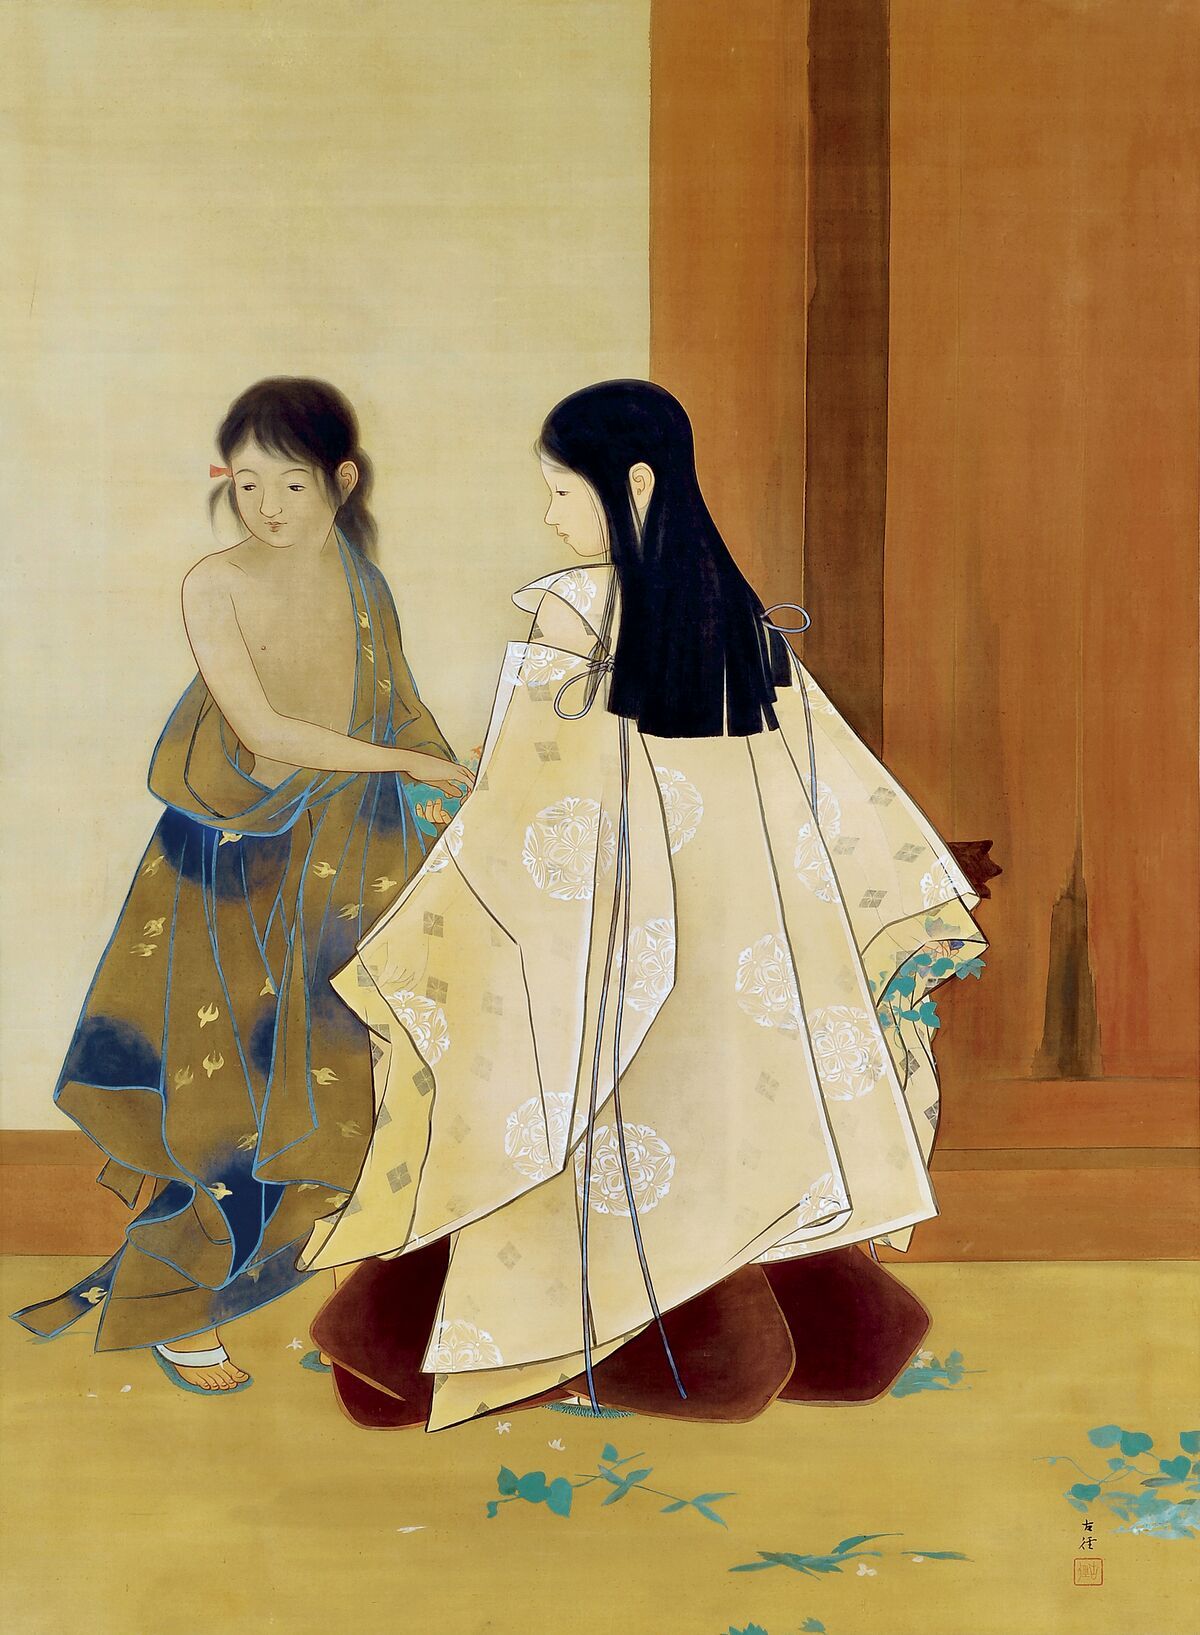 和モダン“の日本画家・小林古径一美術史家が繙く「古径の美」【生誕140年記念展を開催】